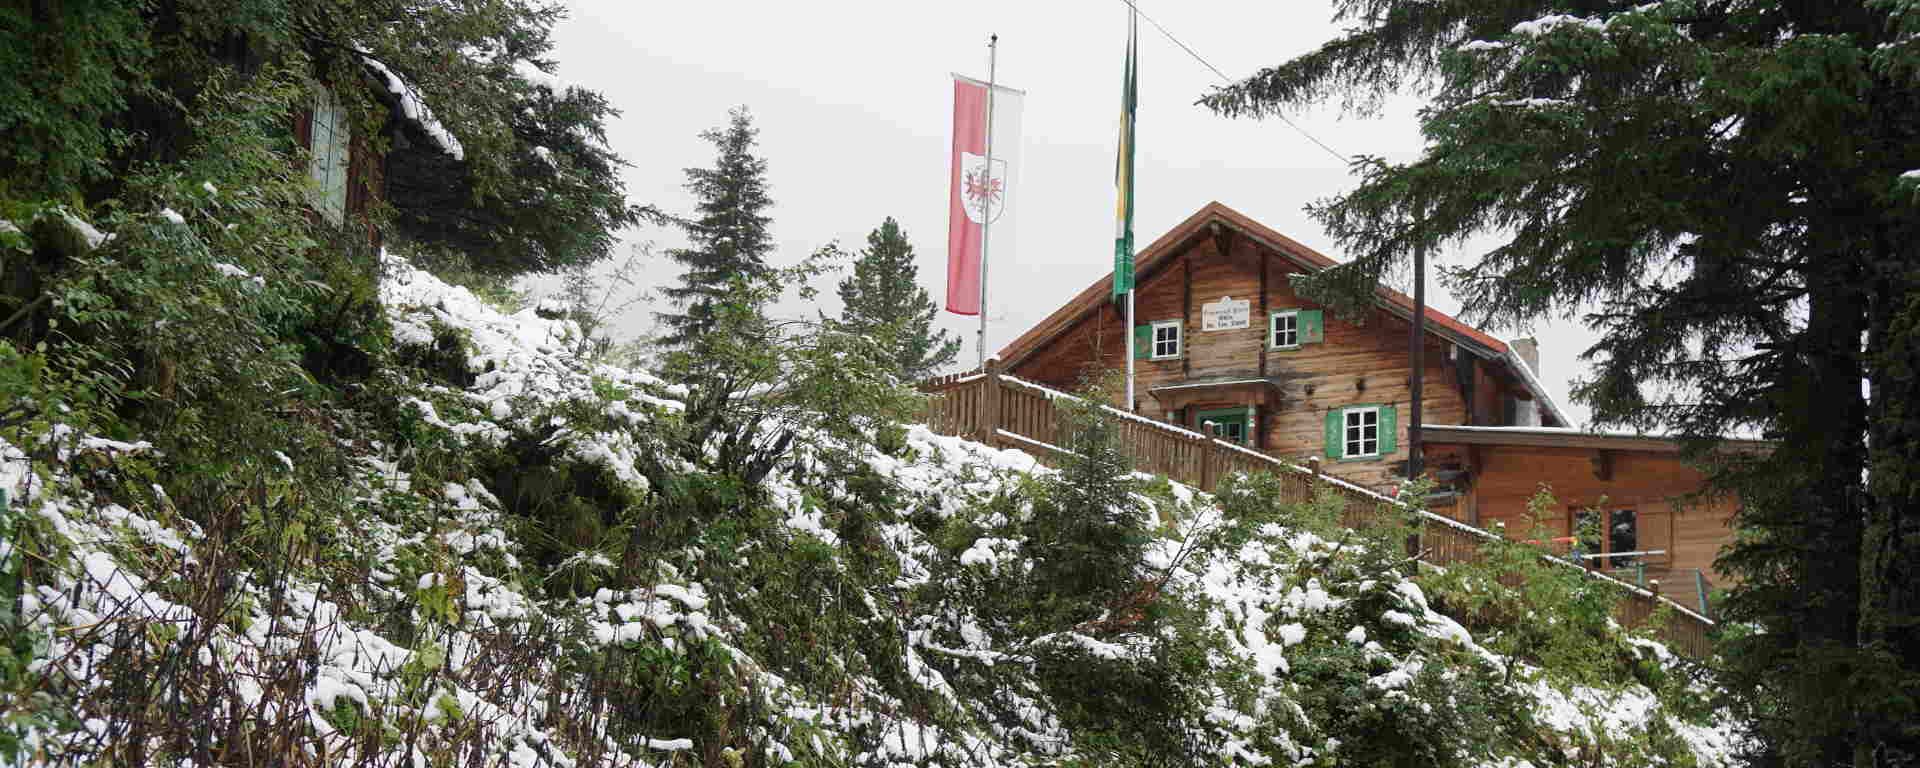 Grawandhütte in Winterlandschaft